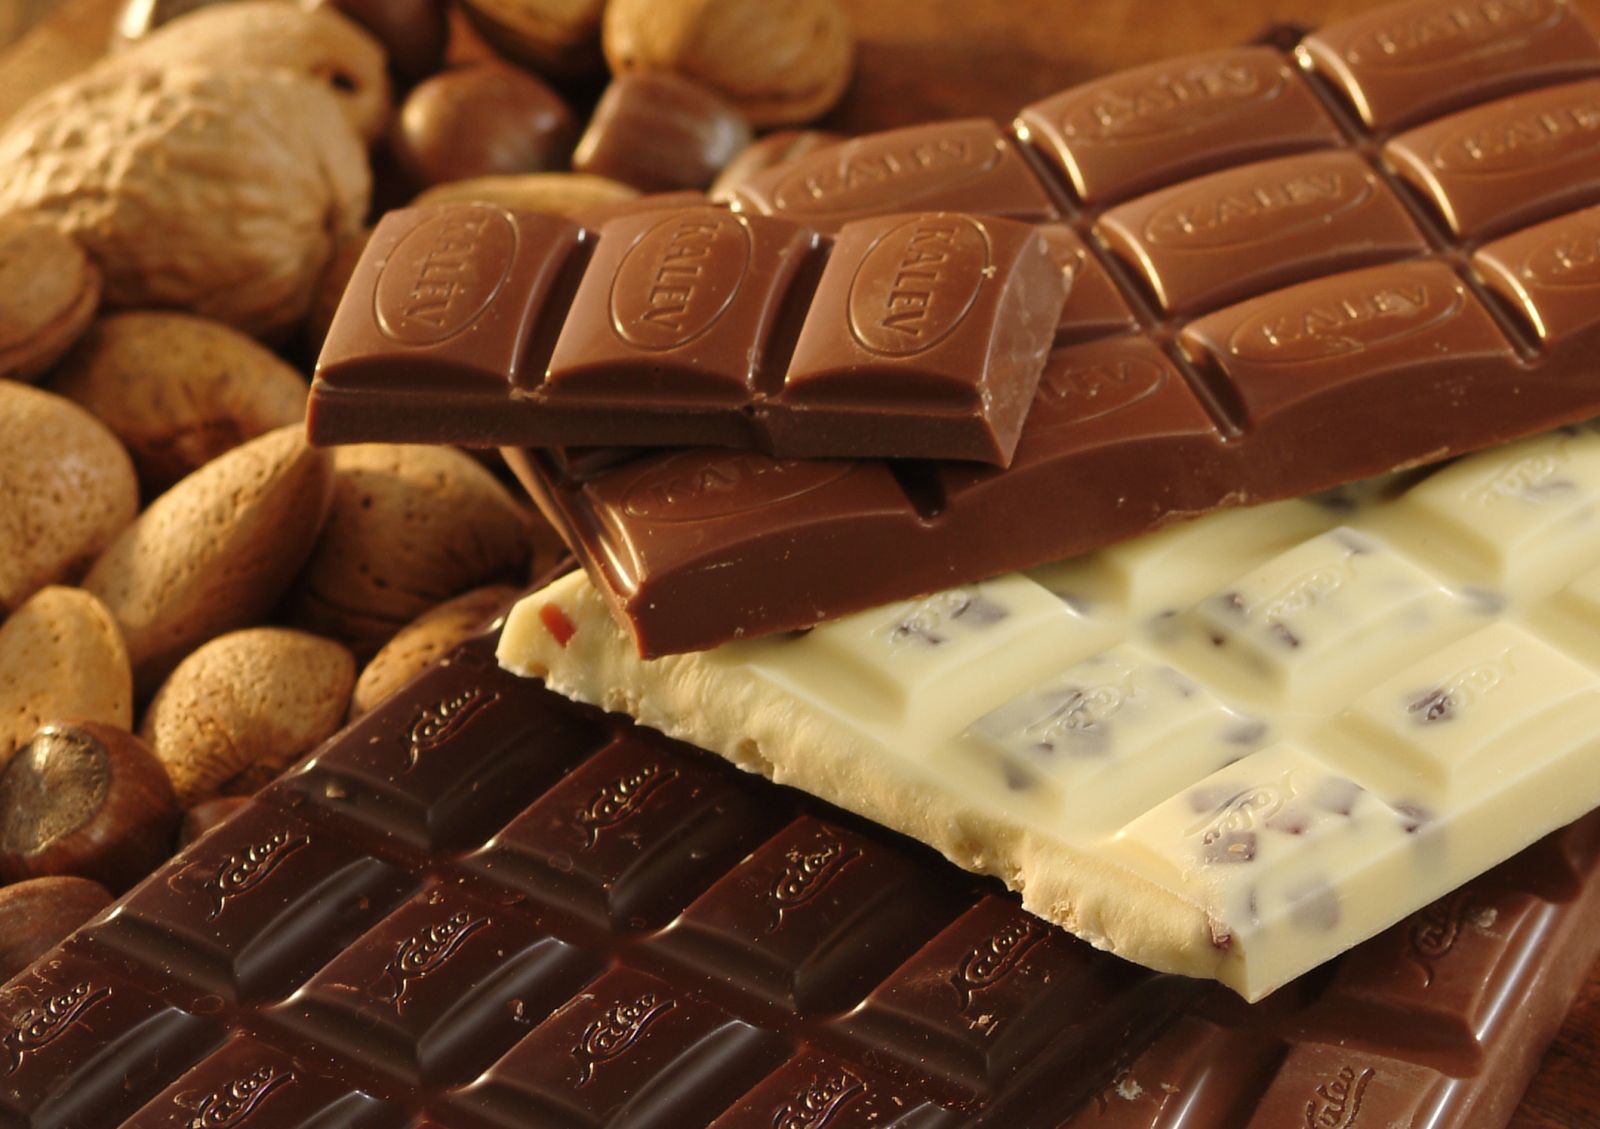 Фото на тему: Если съедать плитку шоколада каждый день, что будет?